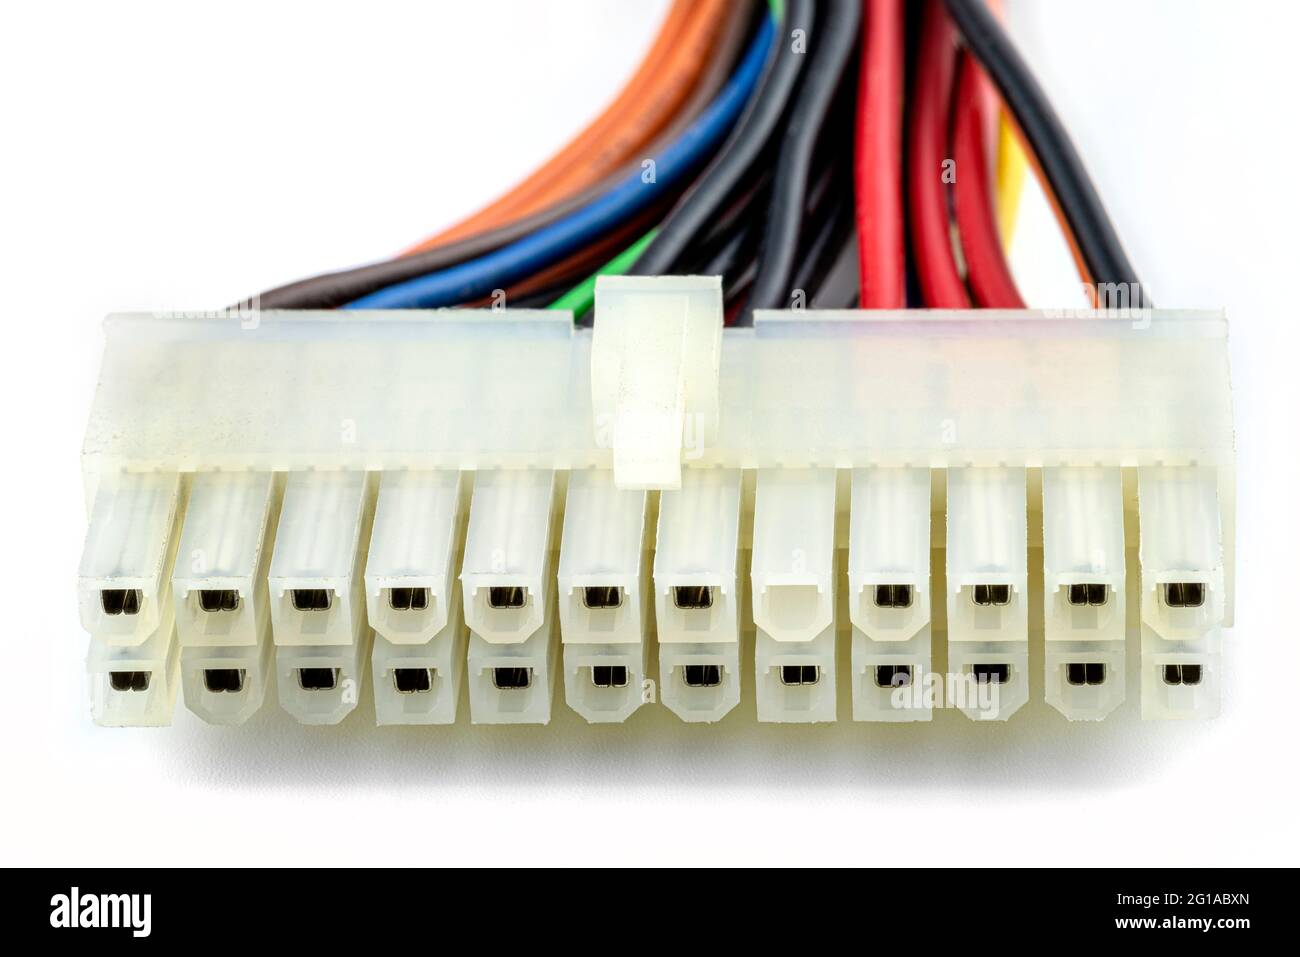 Connettore femmina a 24 pin per l'alimentazione di una scheda madre proveniente da un alimentatore per computer, isolato su sfondo bianco. Foto Stock